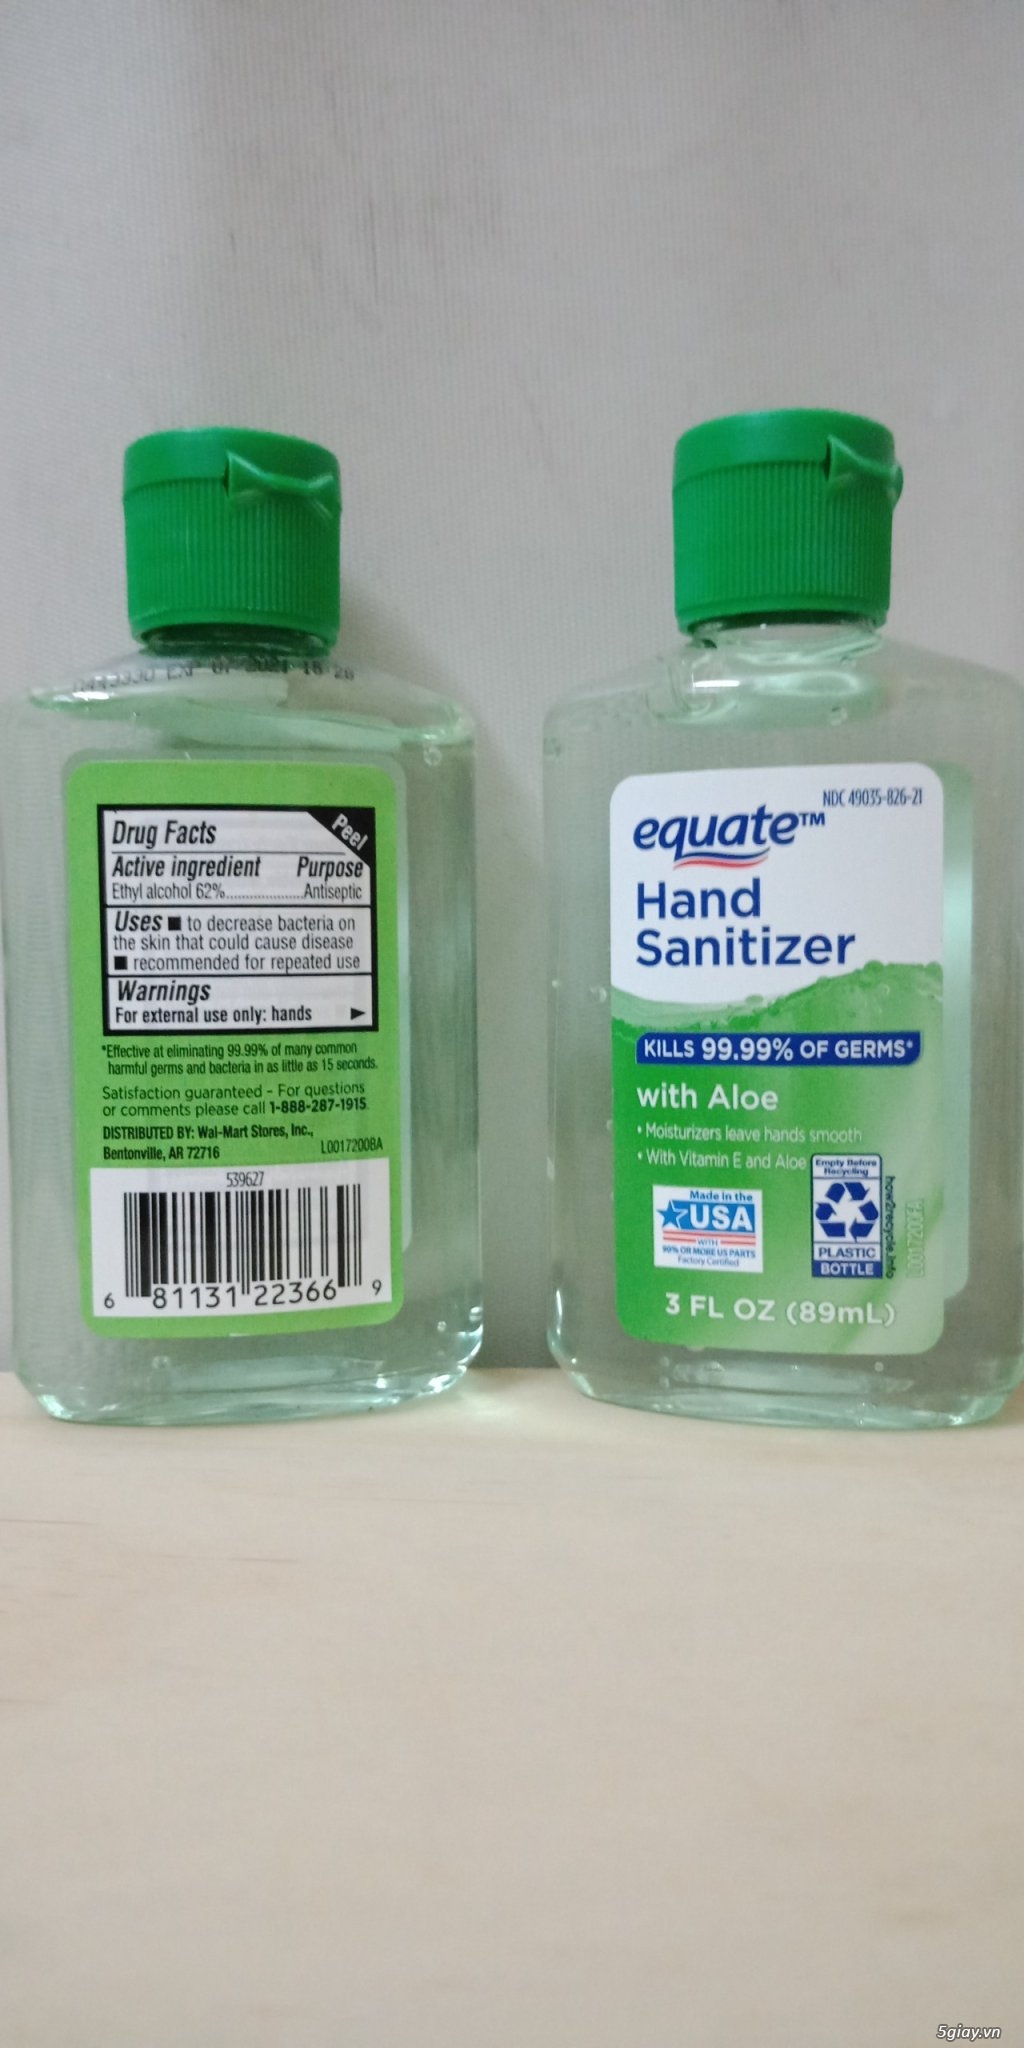 Quận 6 - Bán Gel rửa tay đậm đặc hiệu Equate hàng USA